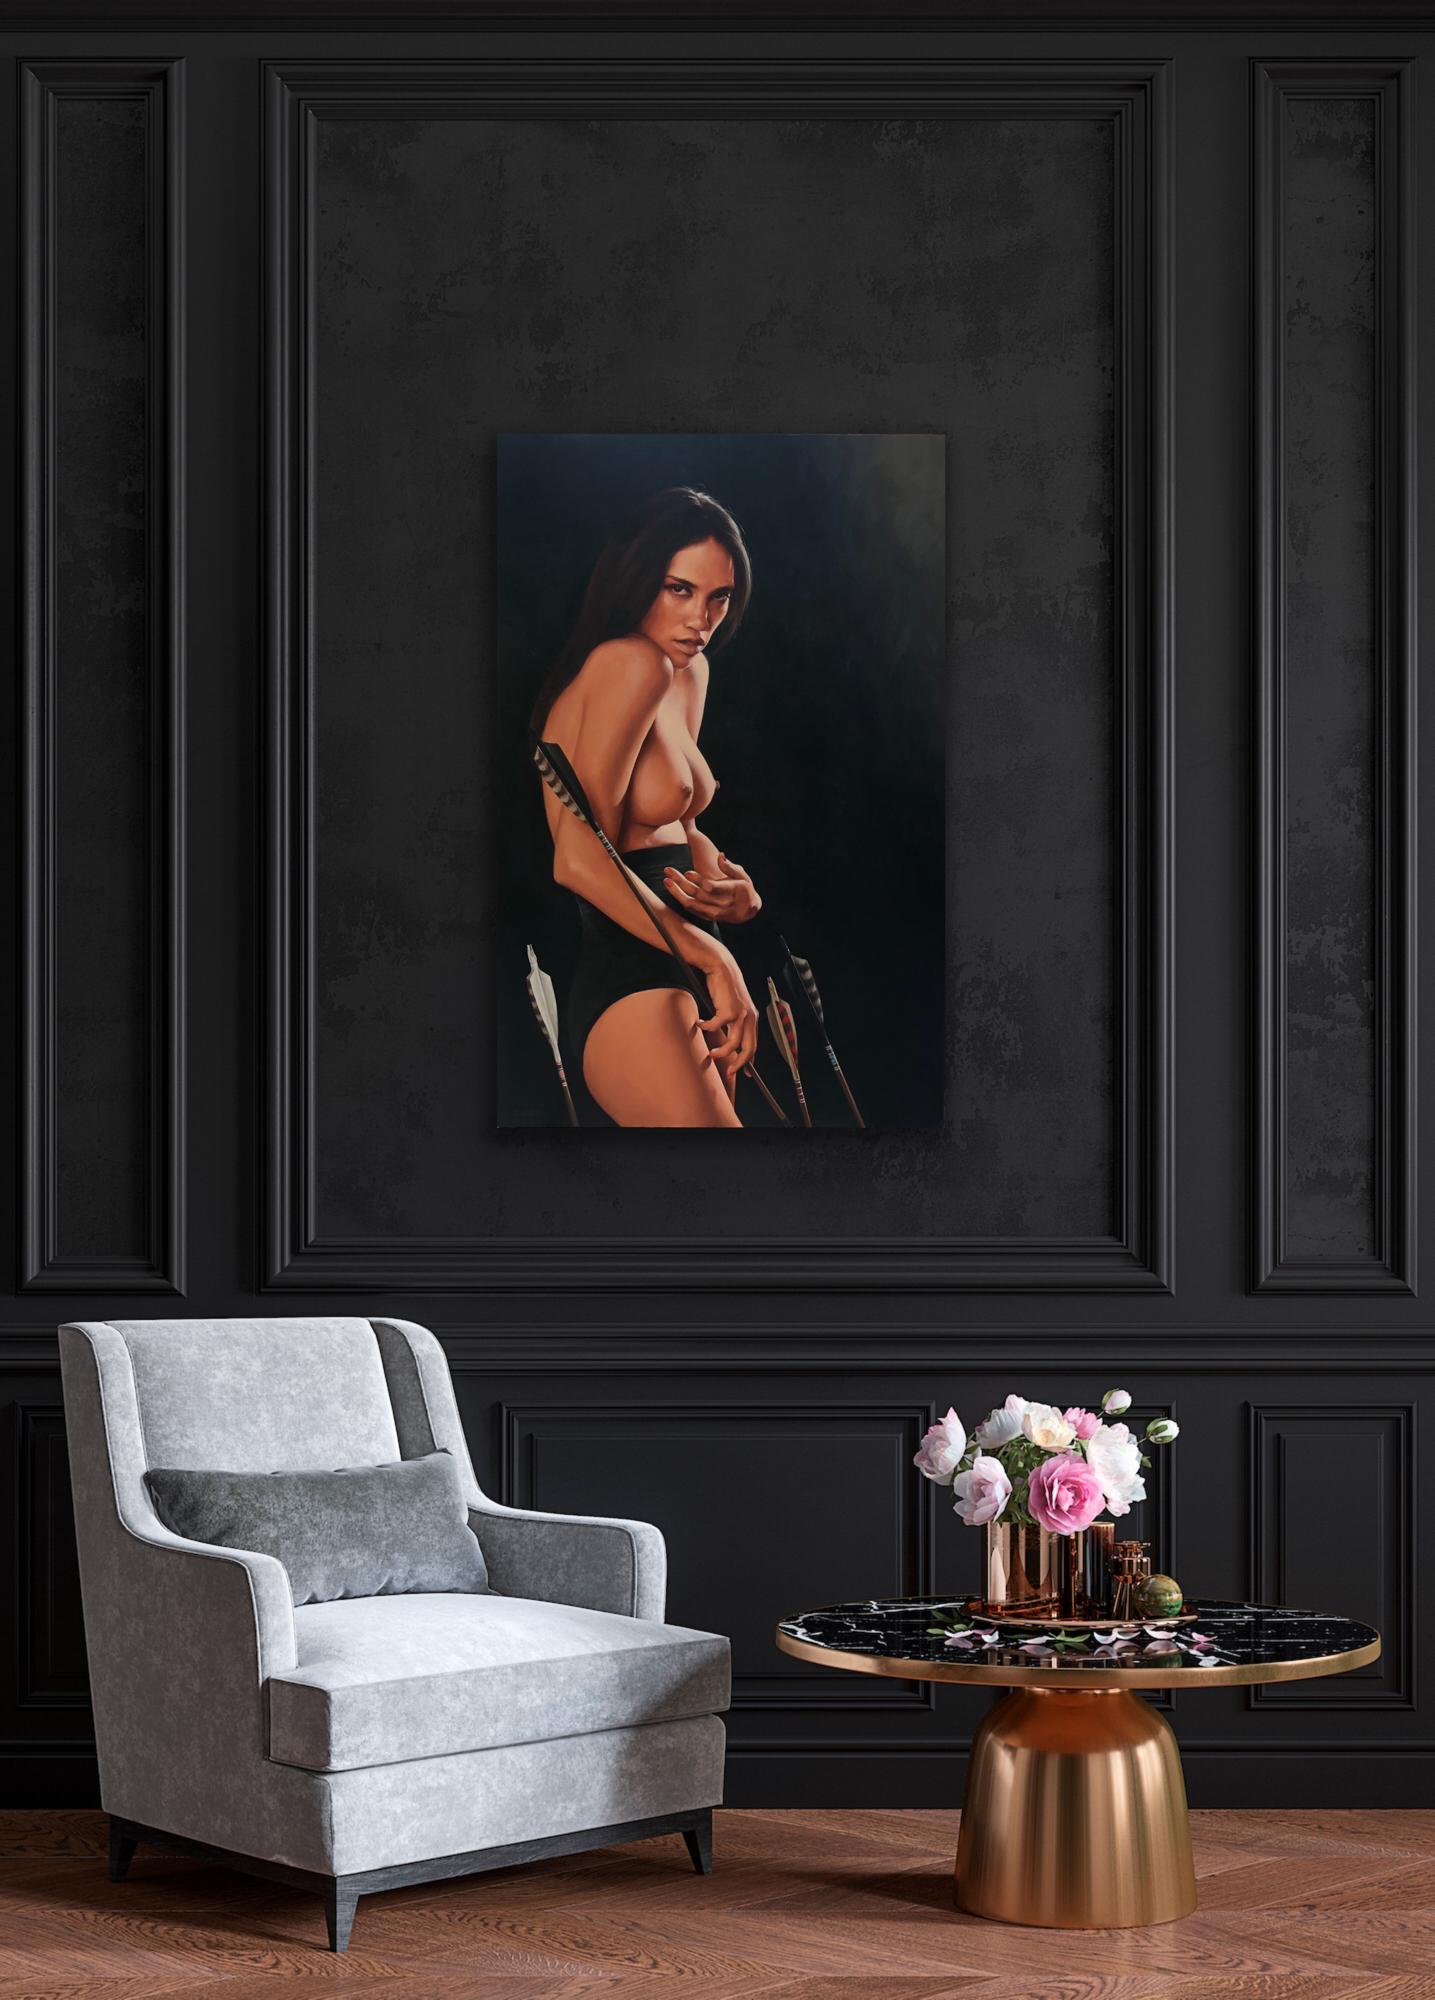 Auffallend realistisches Porträtgemälde einer halbnackten Frau mit Pfeilen mit dem Titel 